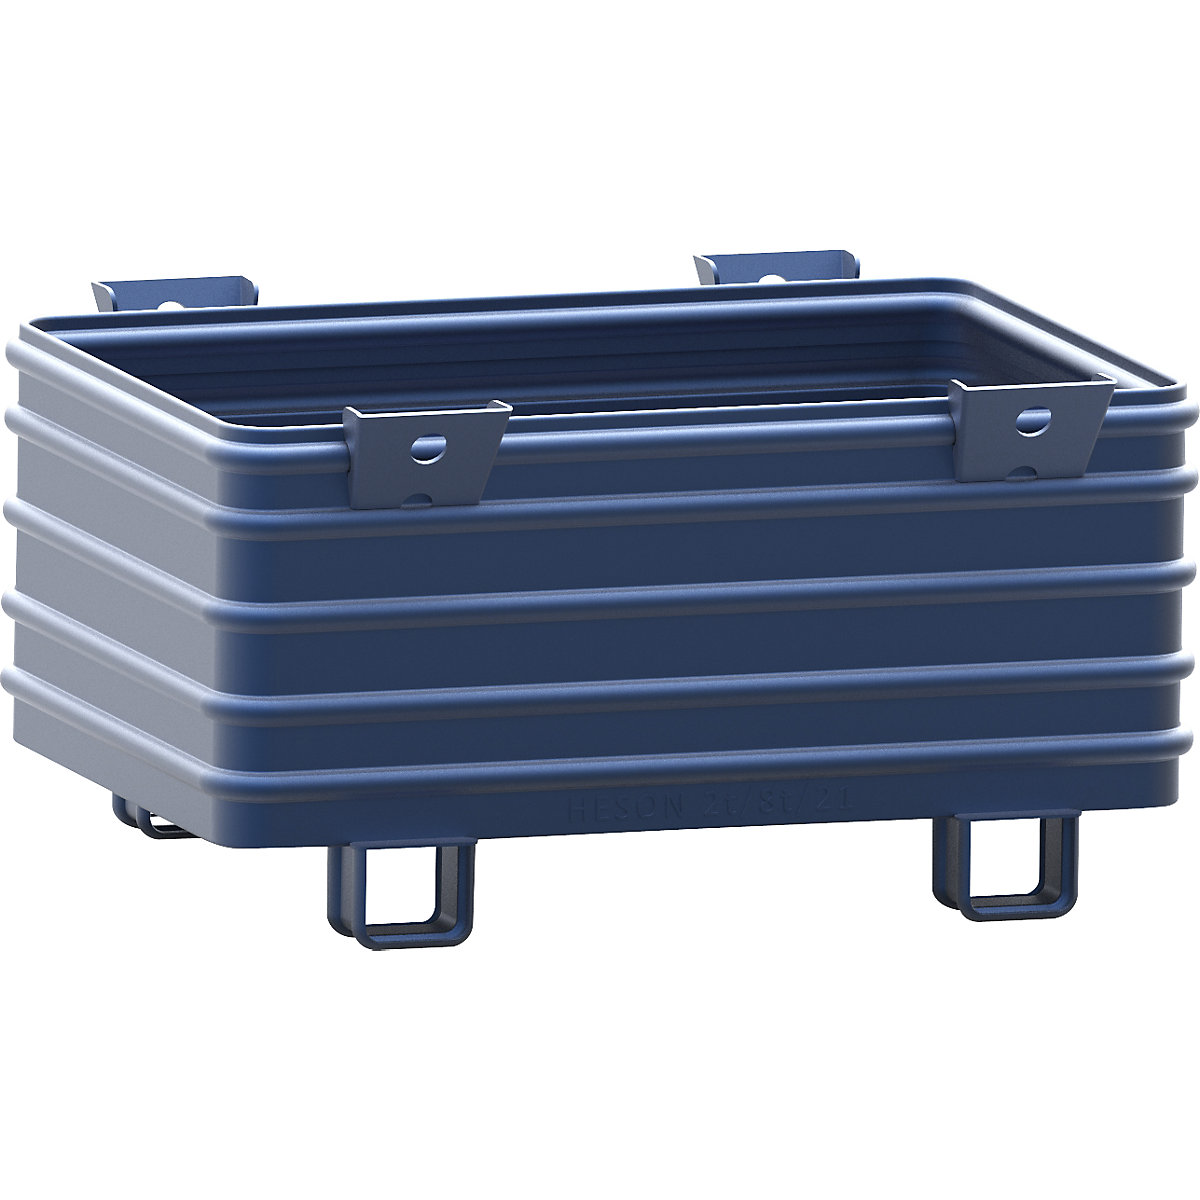 Heson Schwerlast-Stapelbehälter, BxL 800 x 1200 mm, mit U-förmigen Füßen, blau lackiert, ab 1 Stk